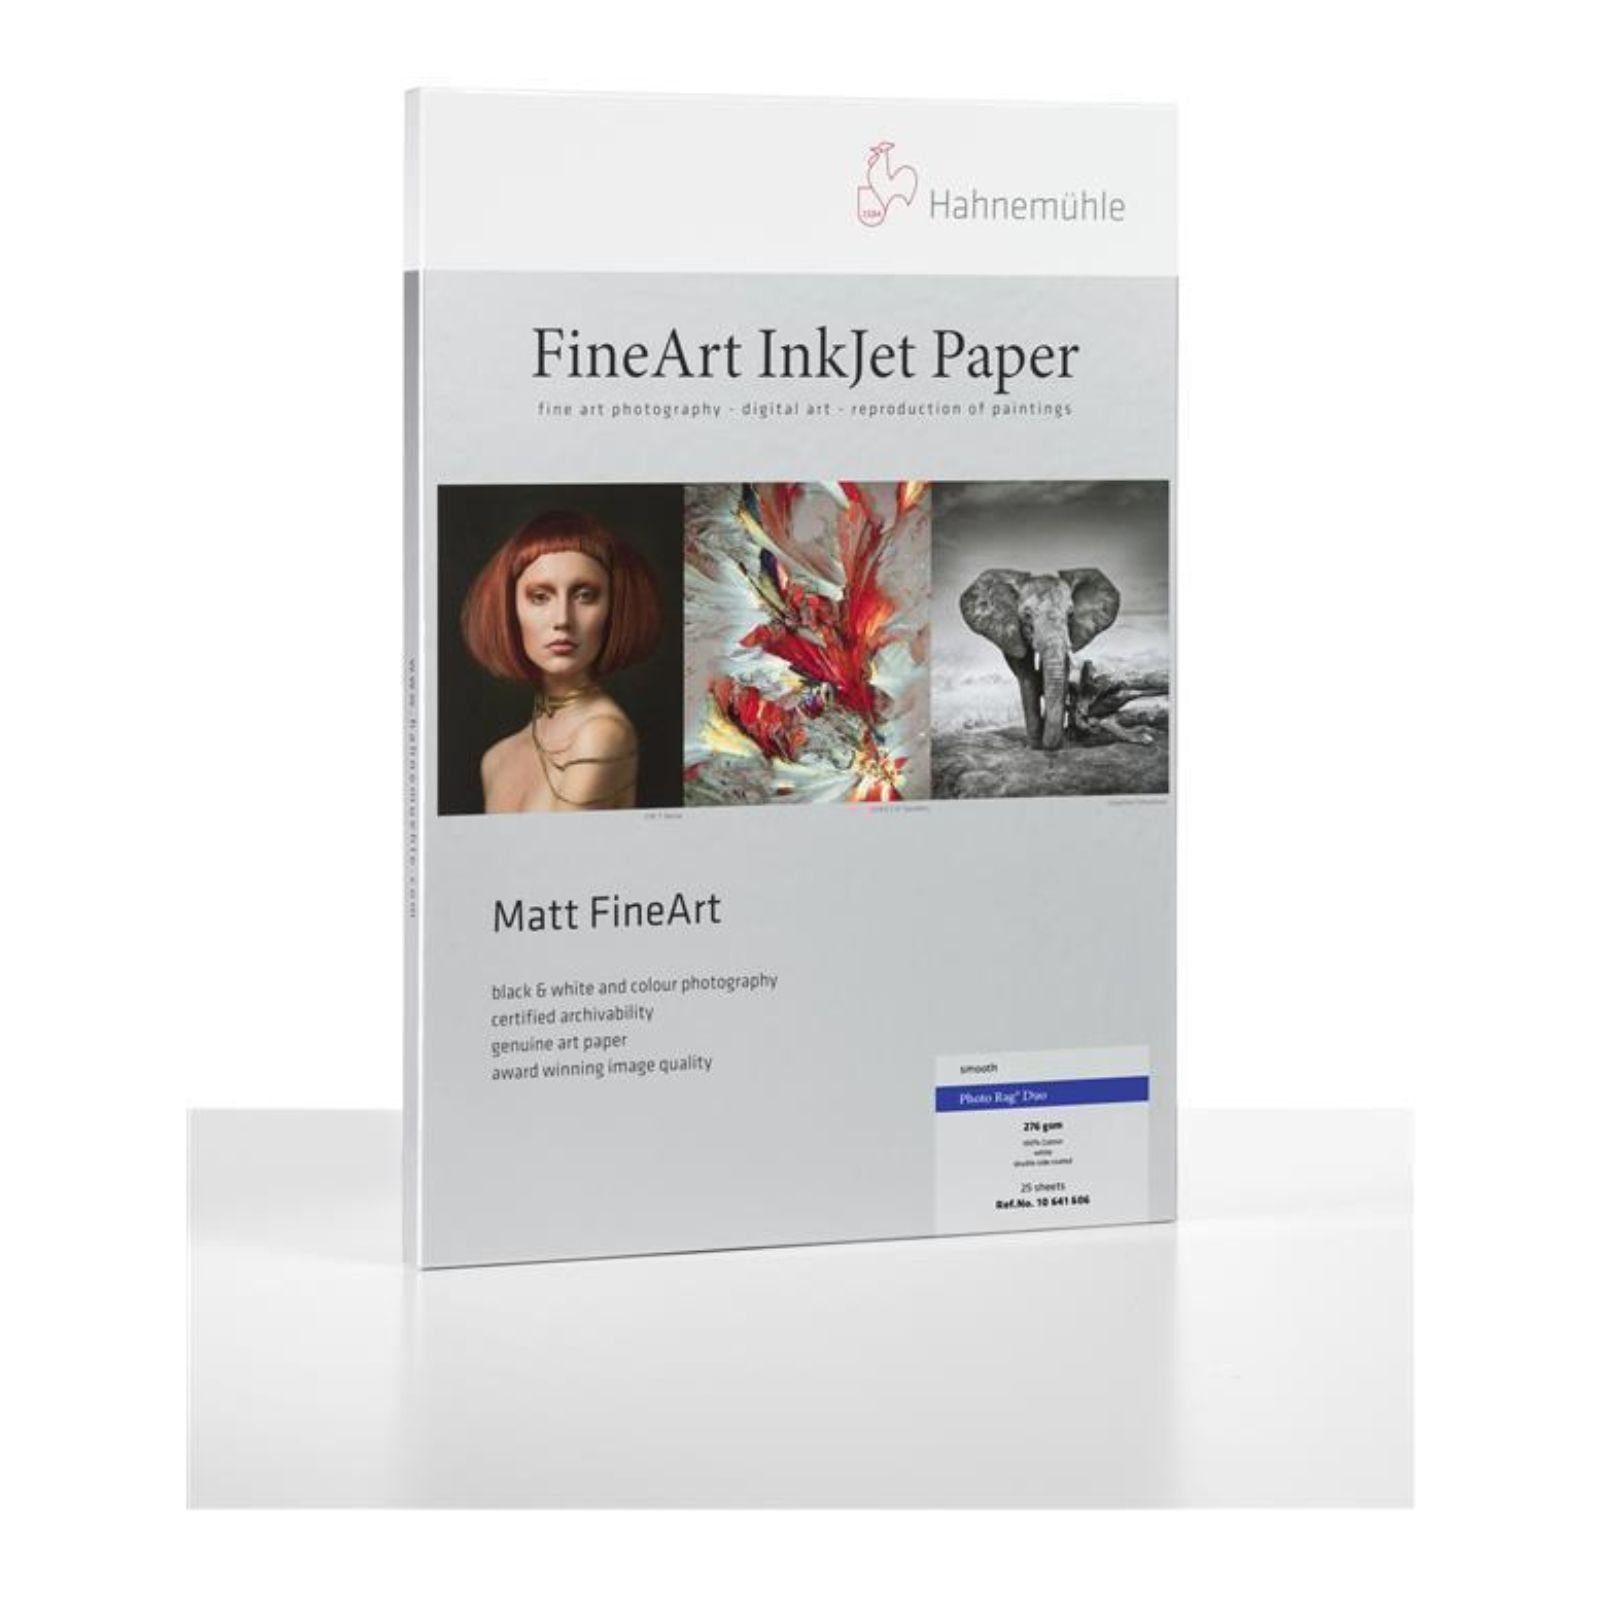 Inkjet-Papier - Duo DIN Fotopapier - FineArt 276g/m² Hahnemühle - 25 Photo Blatt A4 Rag®